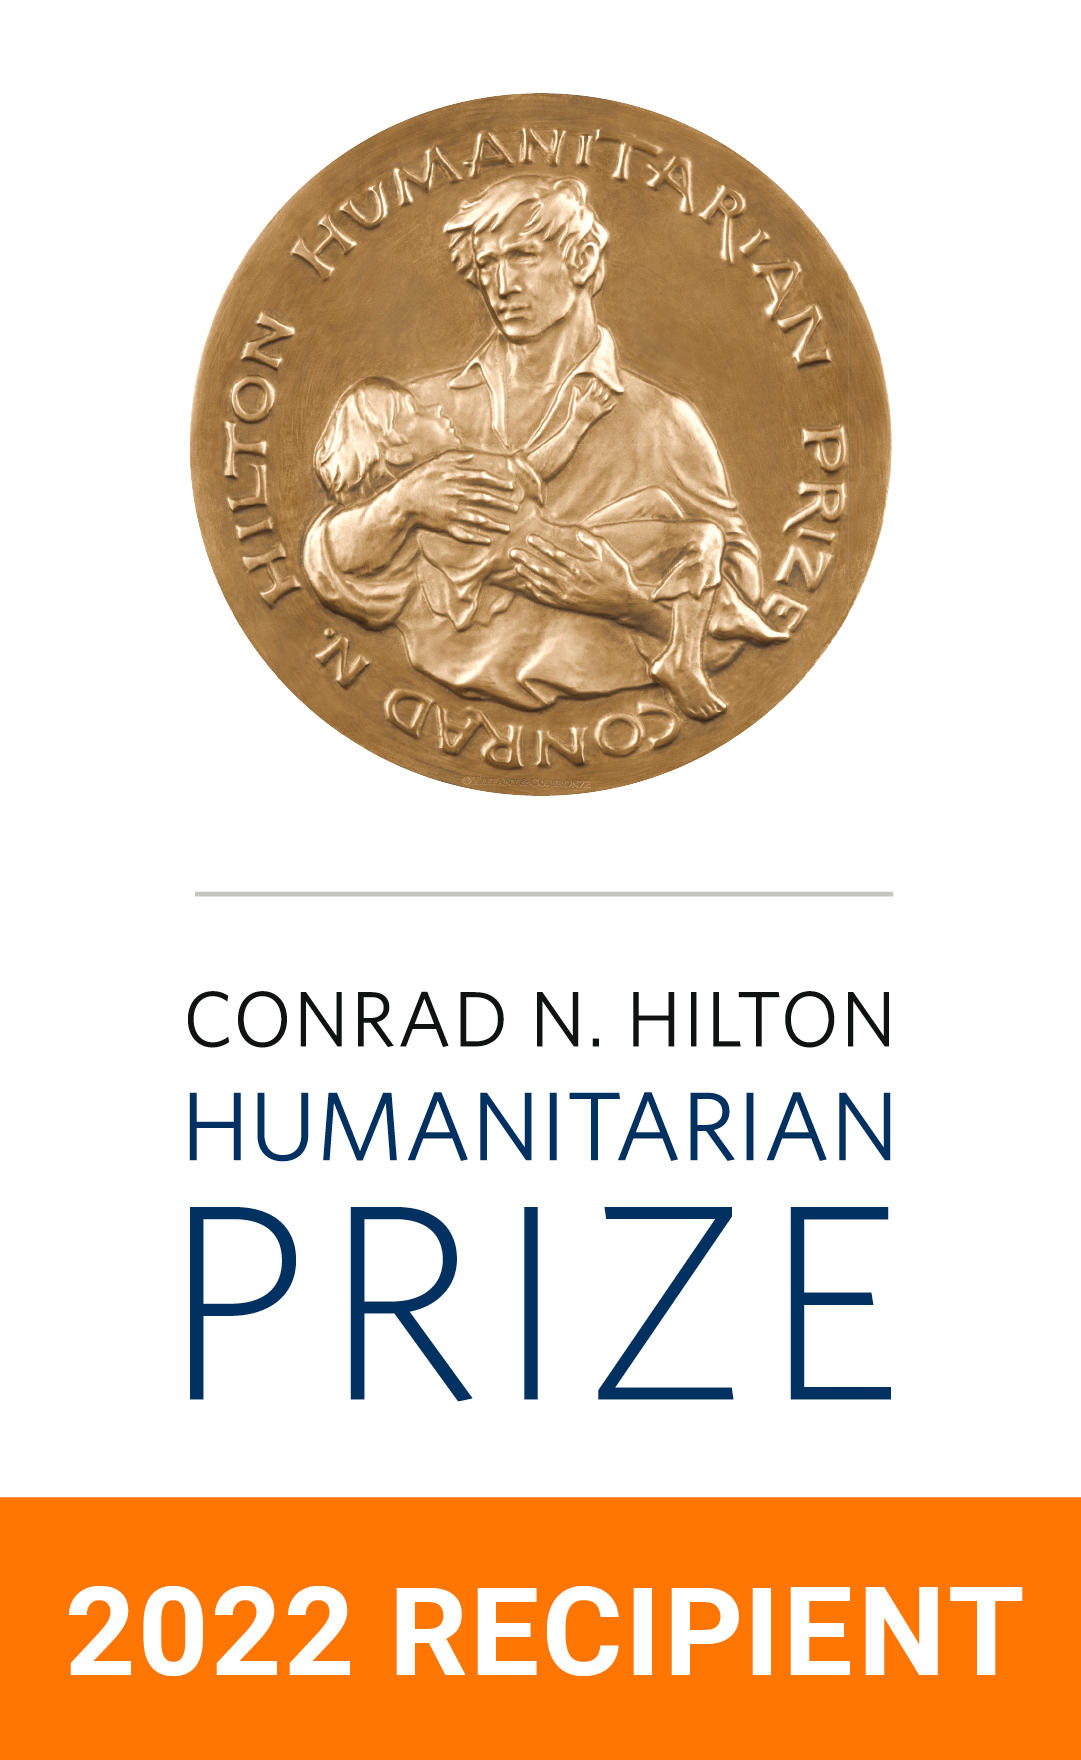 Conrad N. Hilton Humanitarian Prize - 2022 recipient